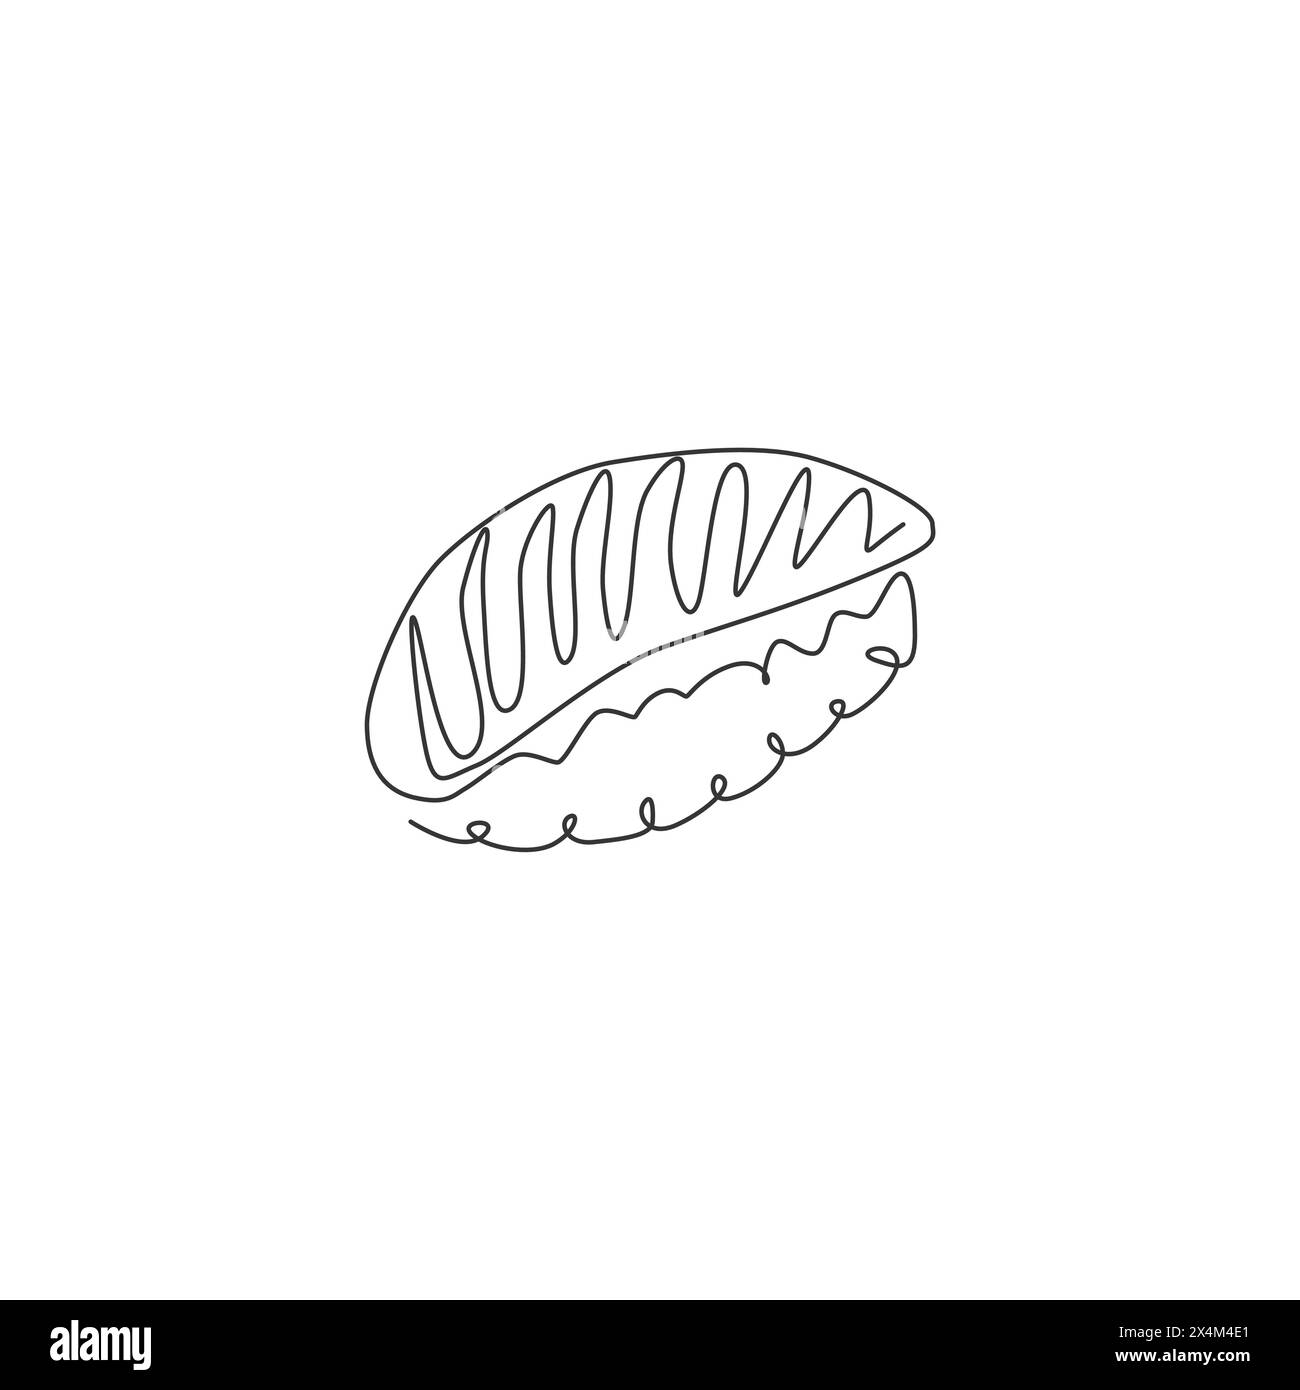 Disegno a linea continua dell'etichetta con il logo del sushi bar stilizzato. Ristorante Emlem con nigiri freschi di pesce. Design moderno a una linea per disegnare Illustrazione Vettoriale